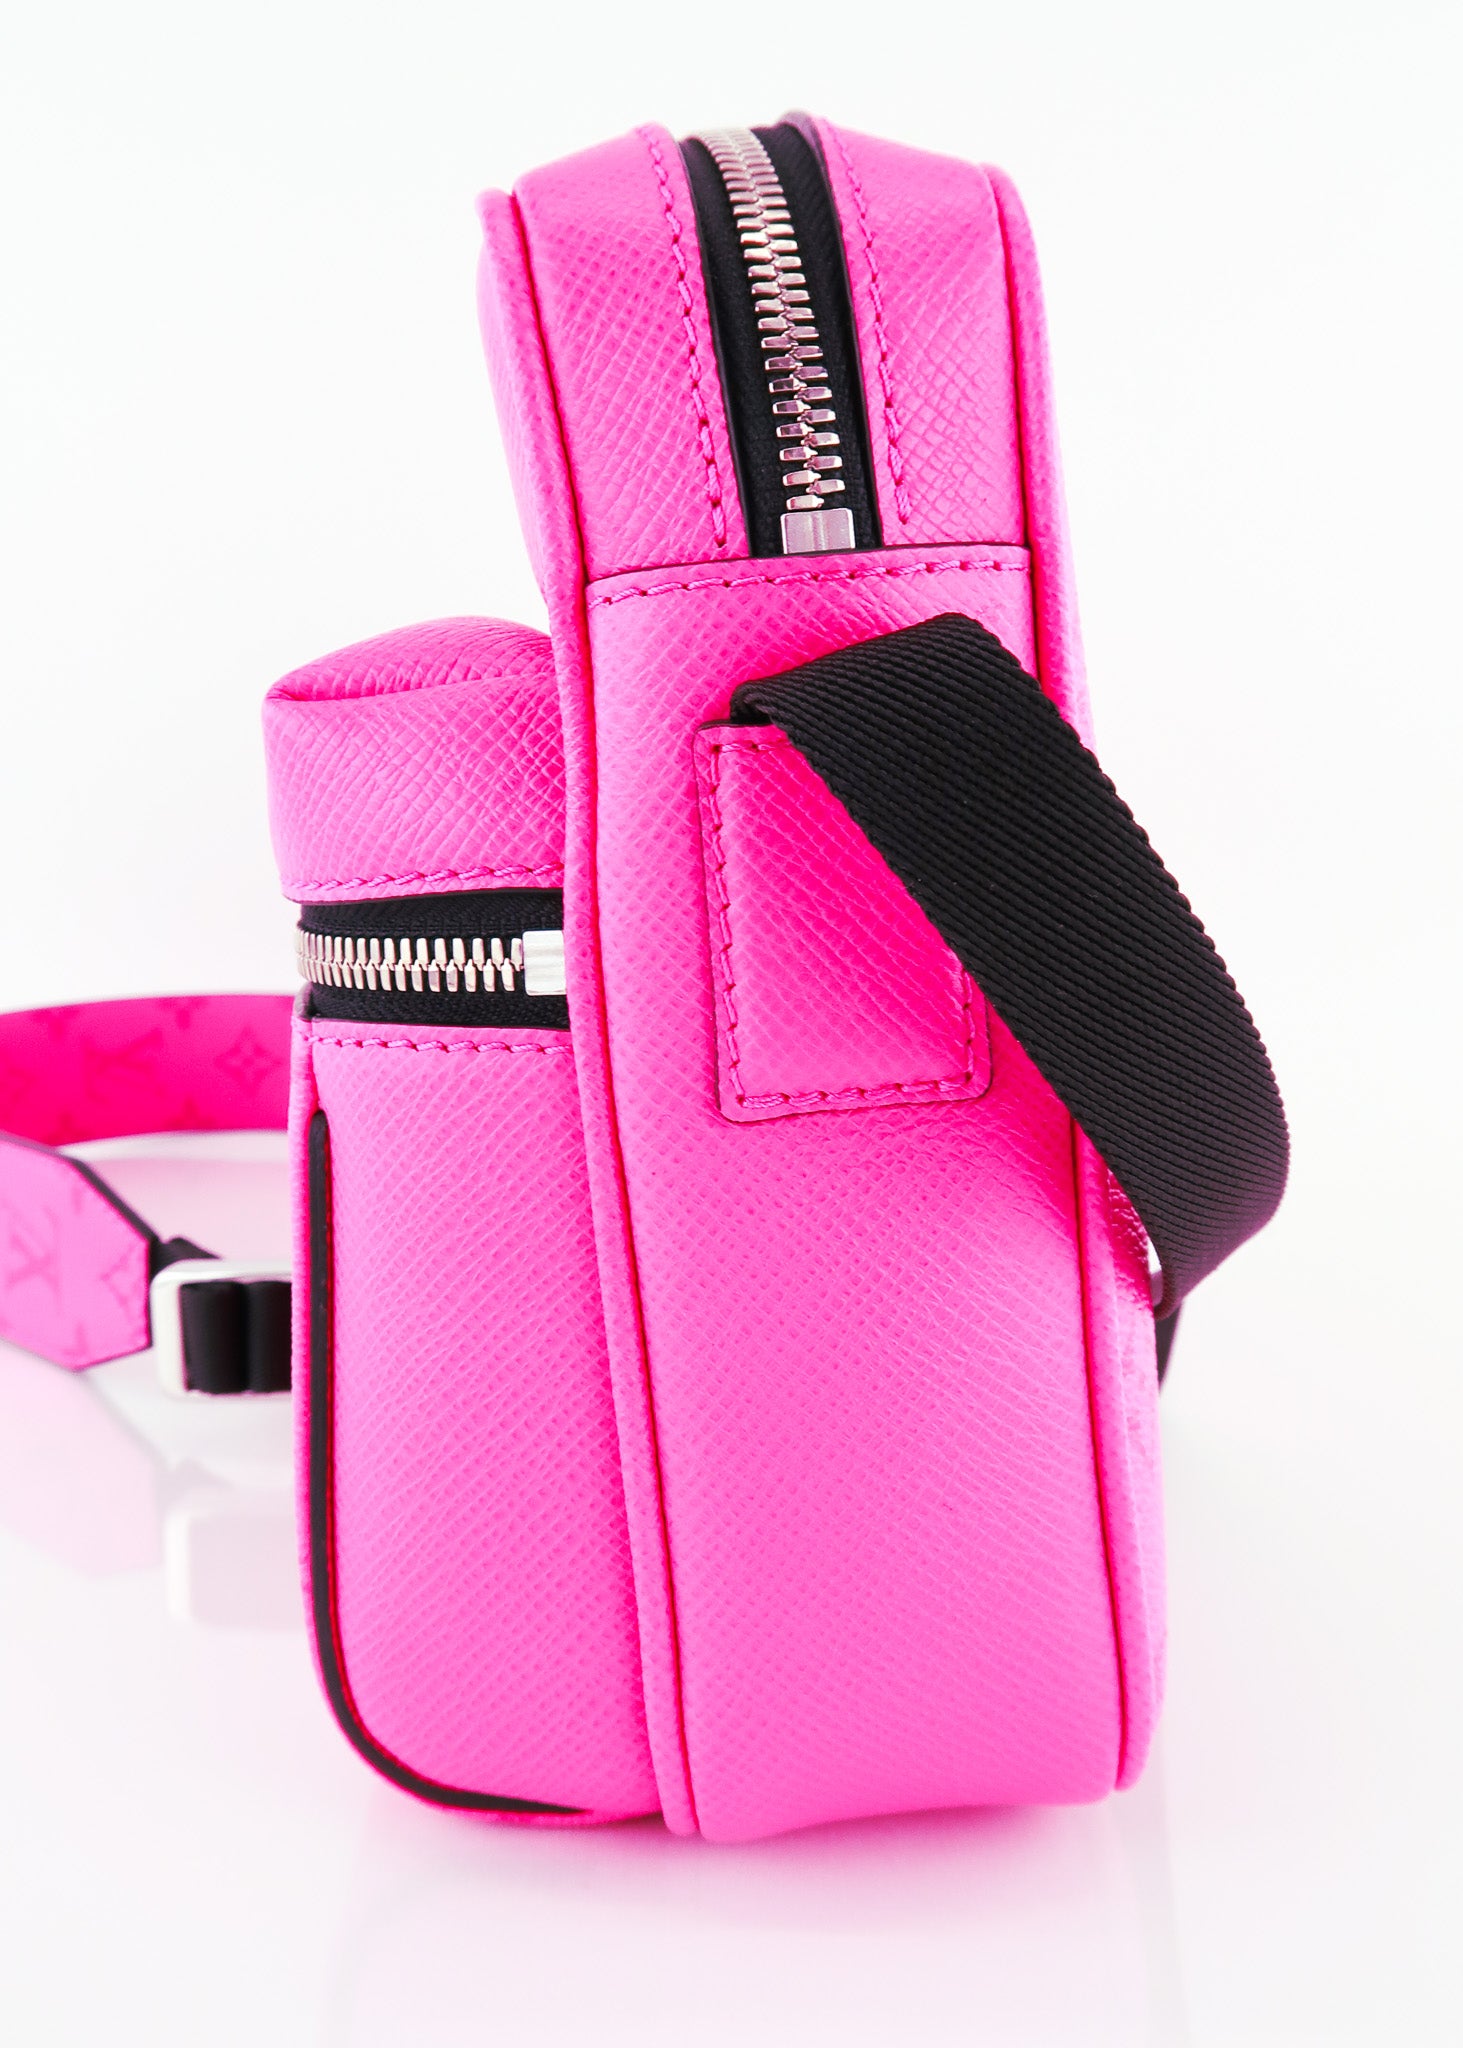 Louis Vuitton, Bags, Louis Vuitton Outdoor Sling Bag Messenger Pink  Fuchsia Ss2 Mint